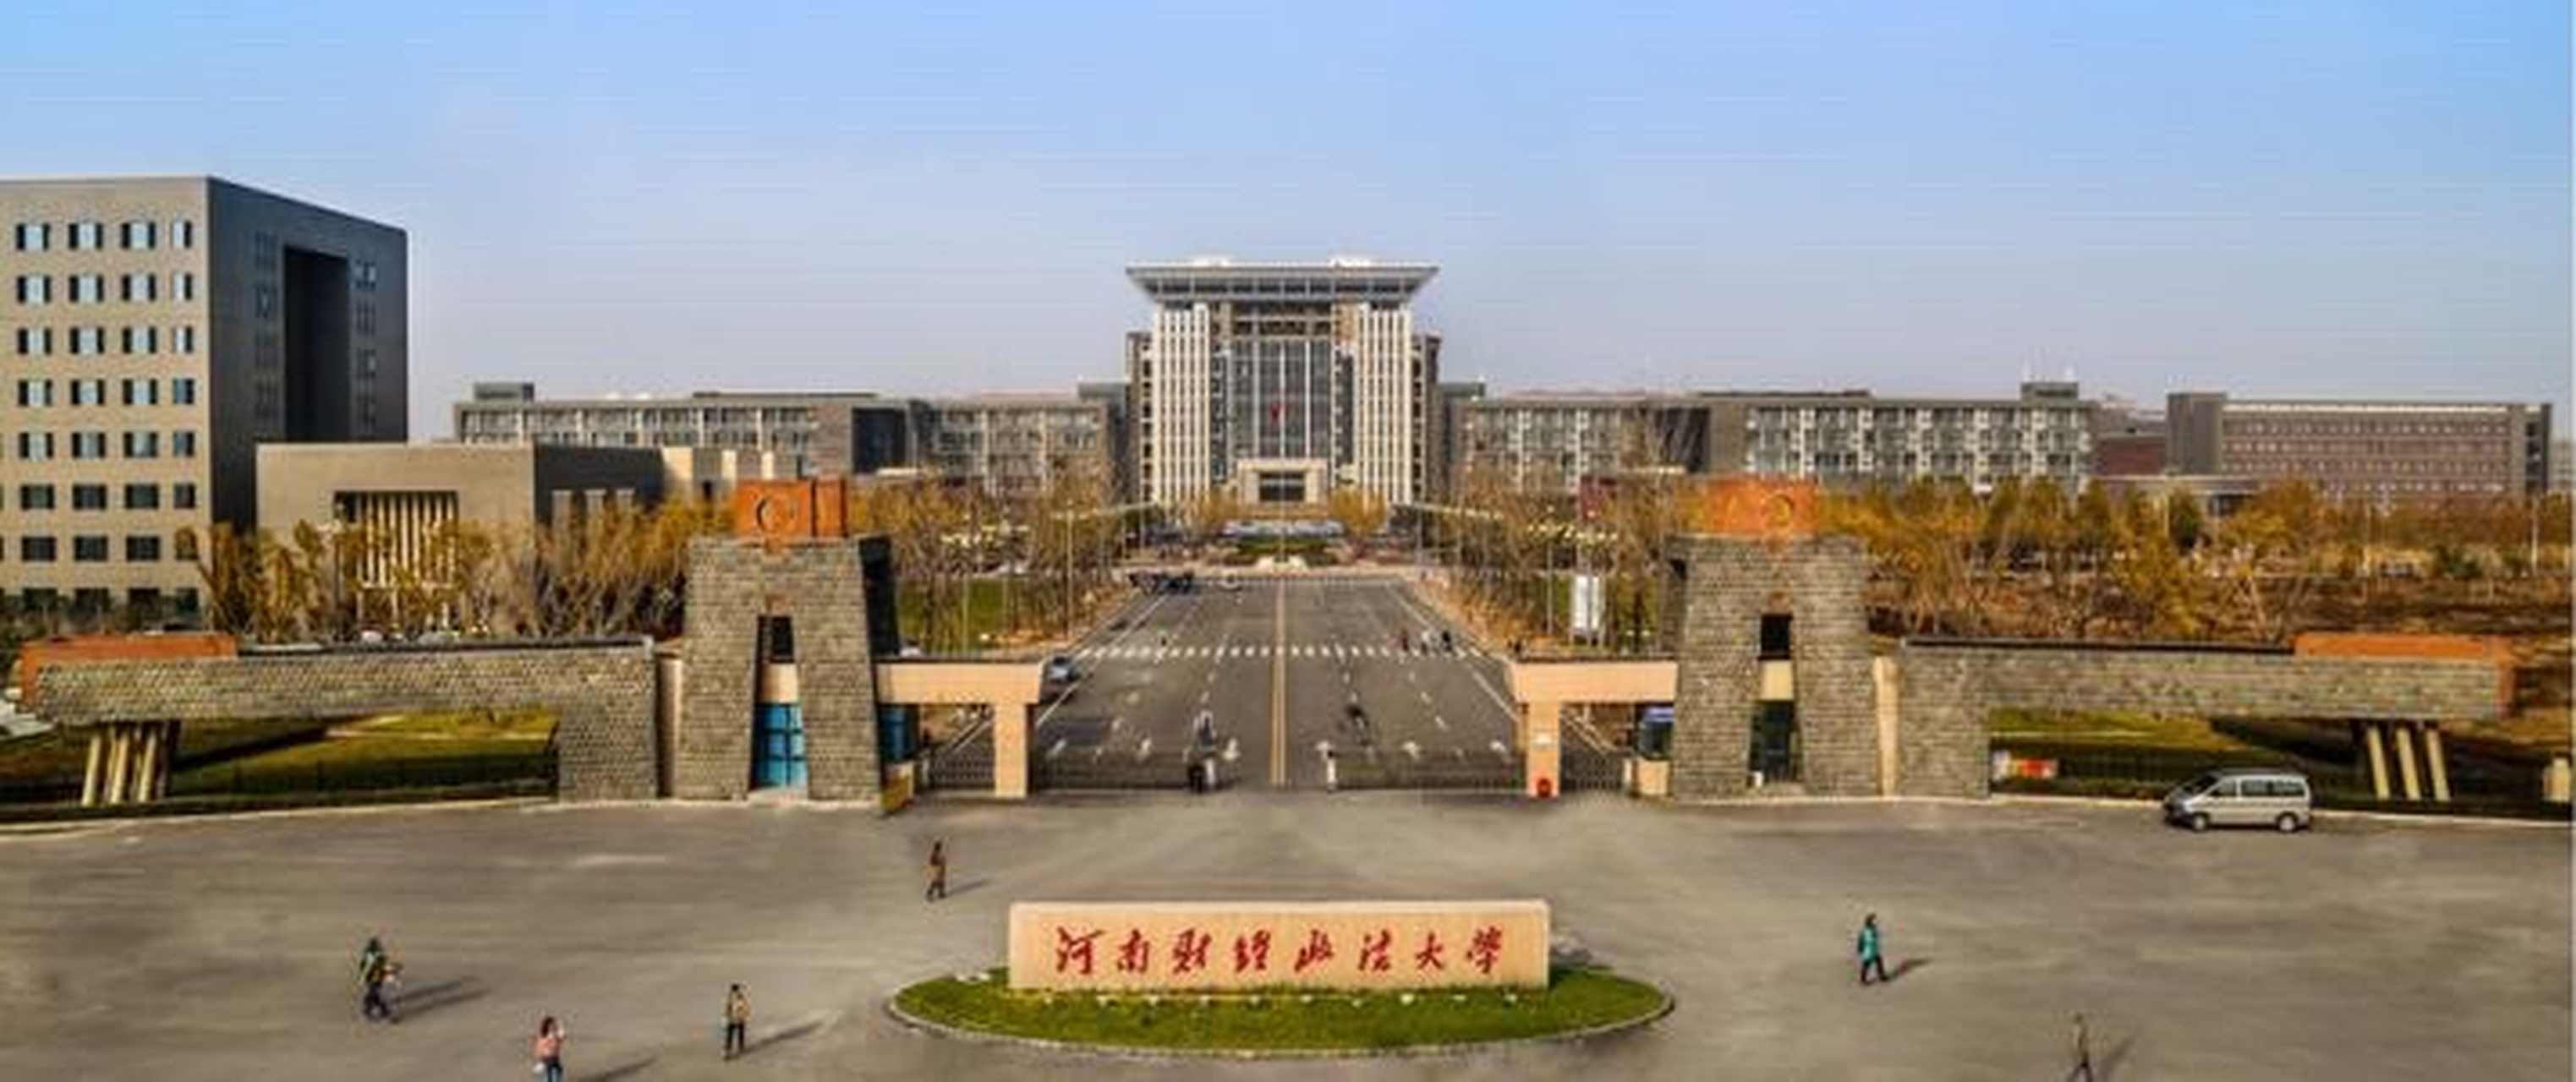 河南财经政法大学,近些年发展是比较快的.